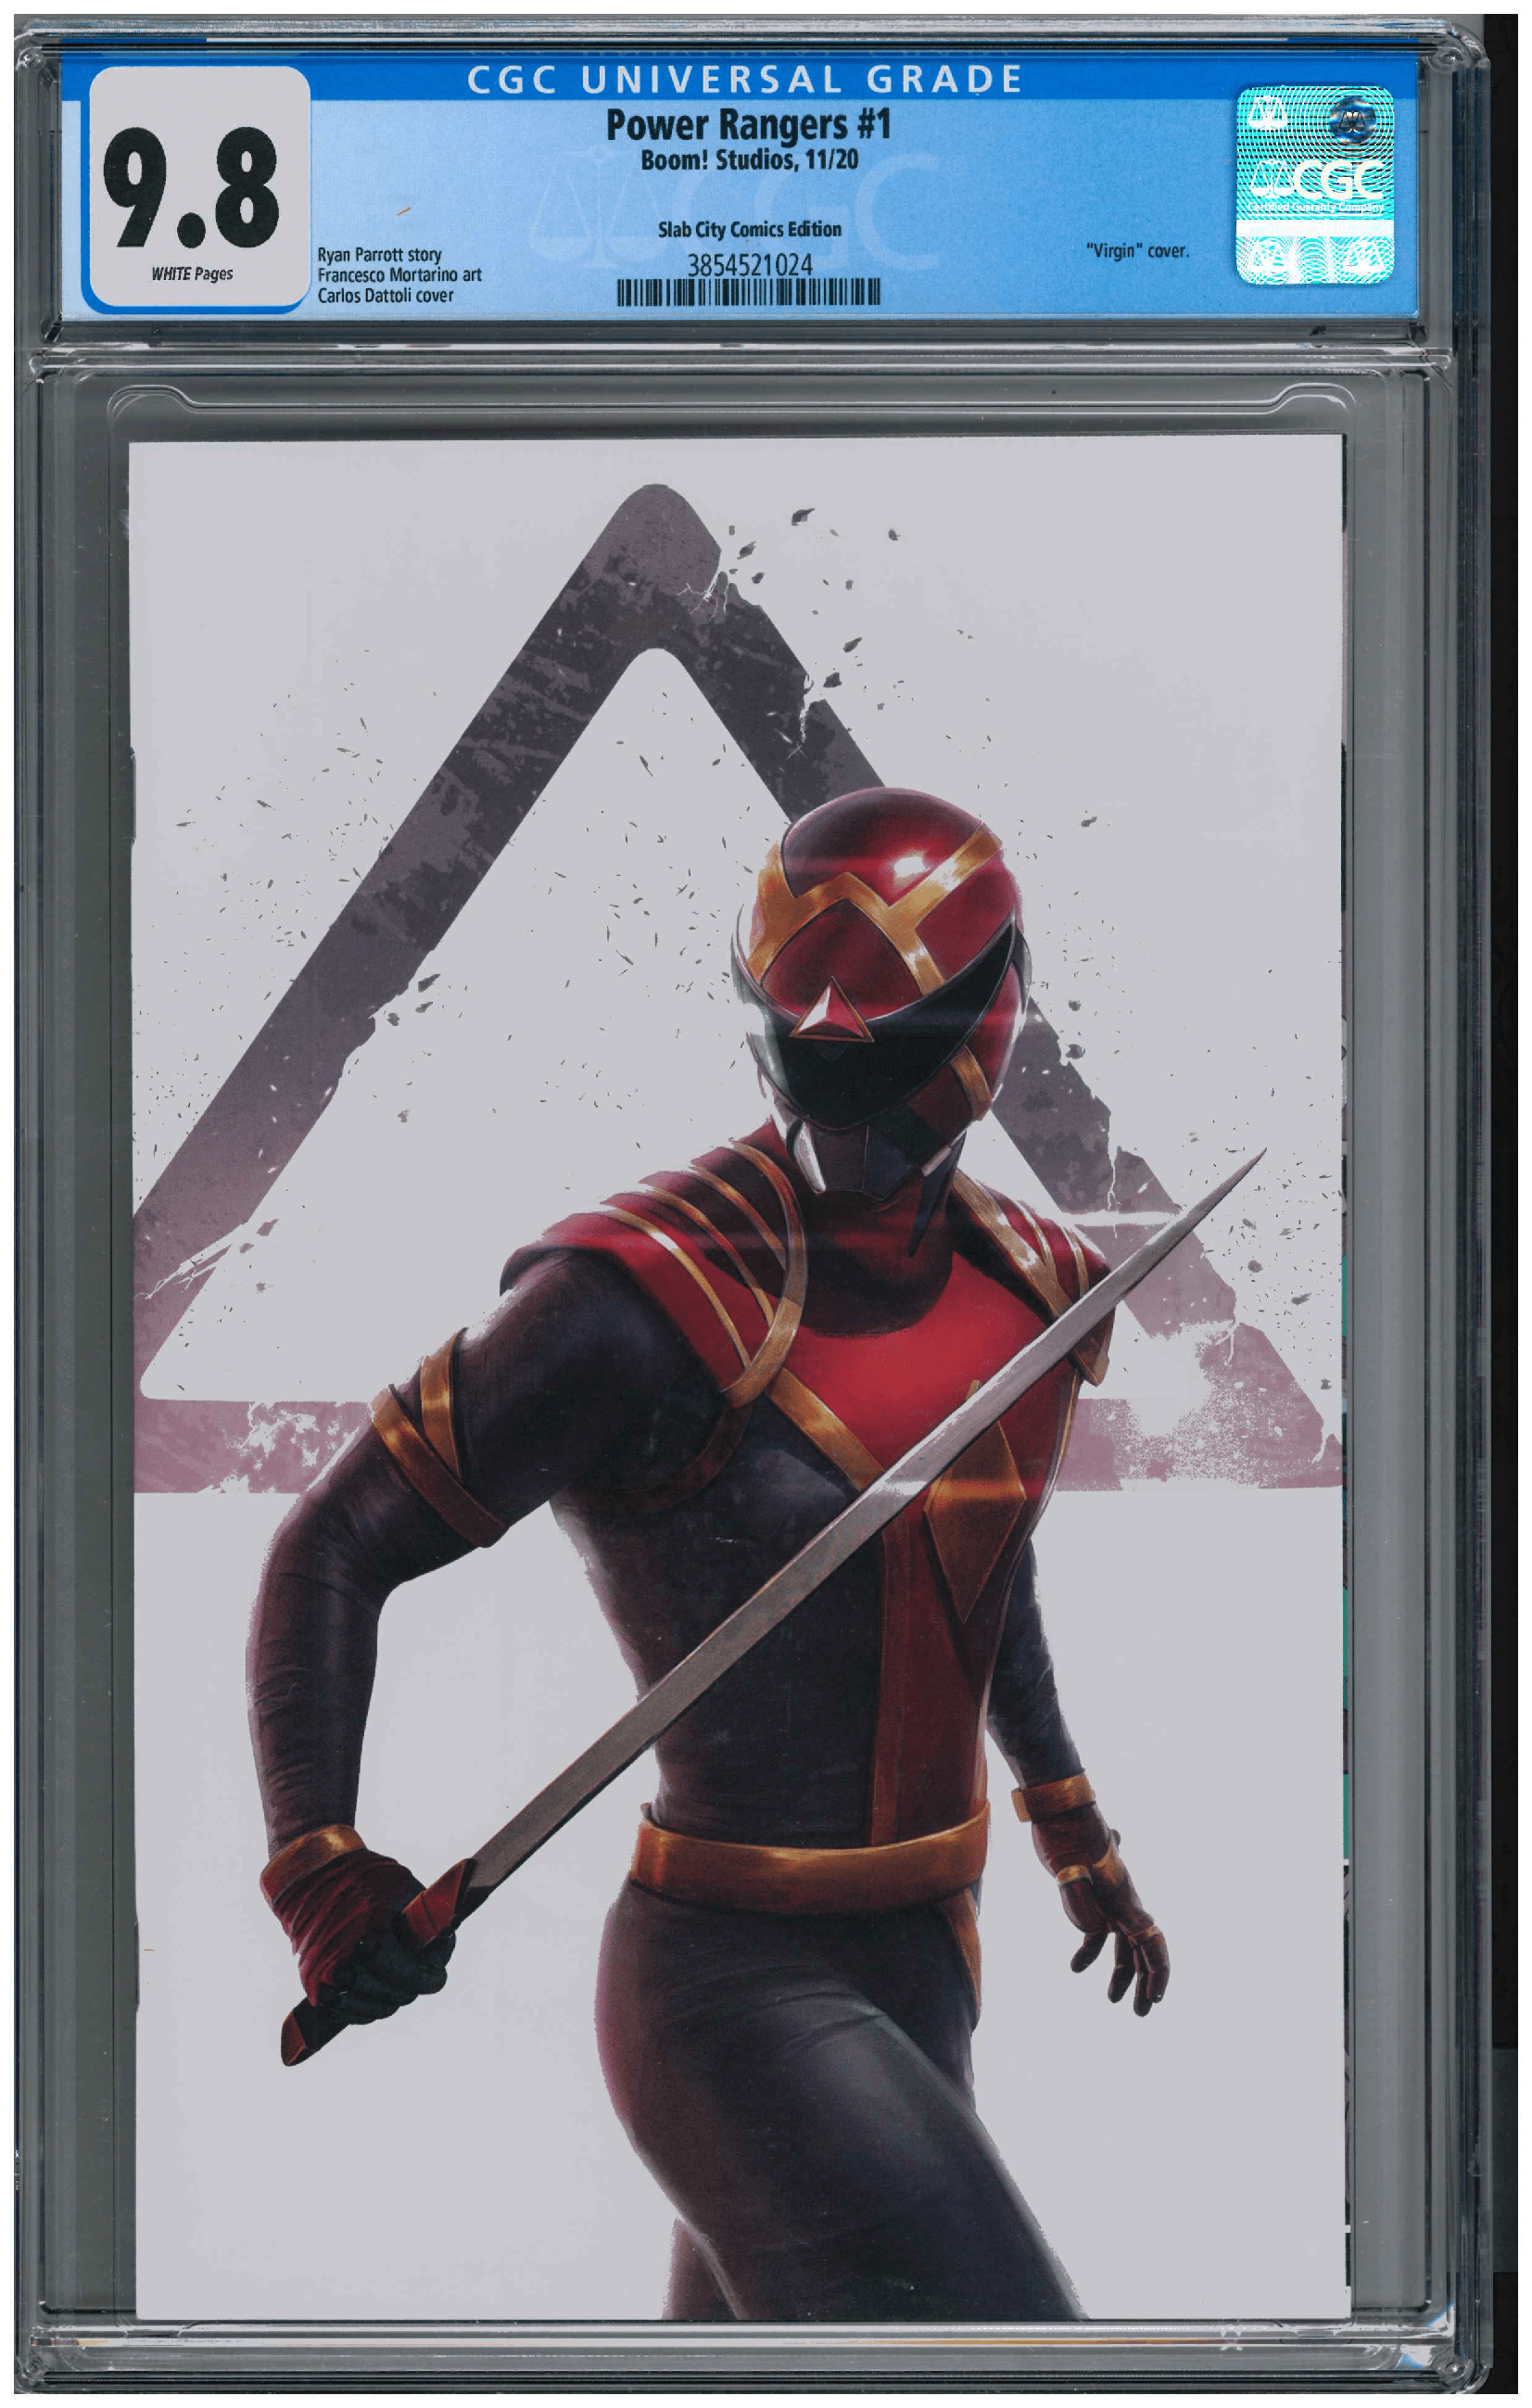 Power Ranger #1